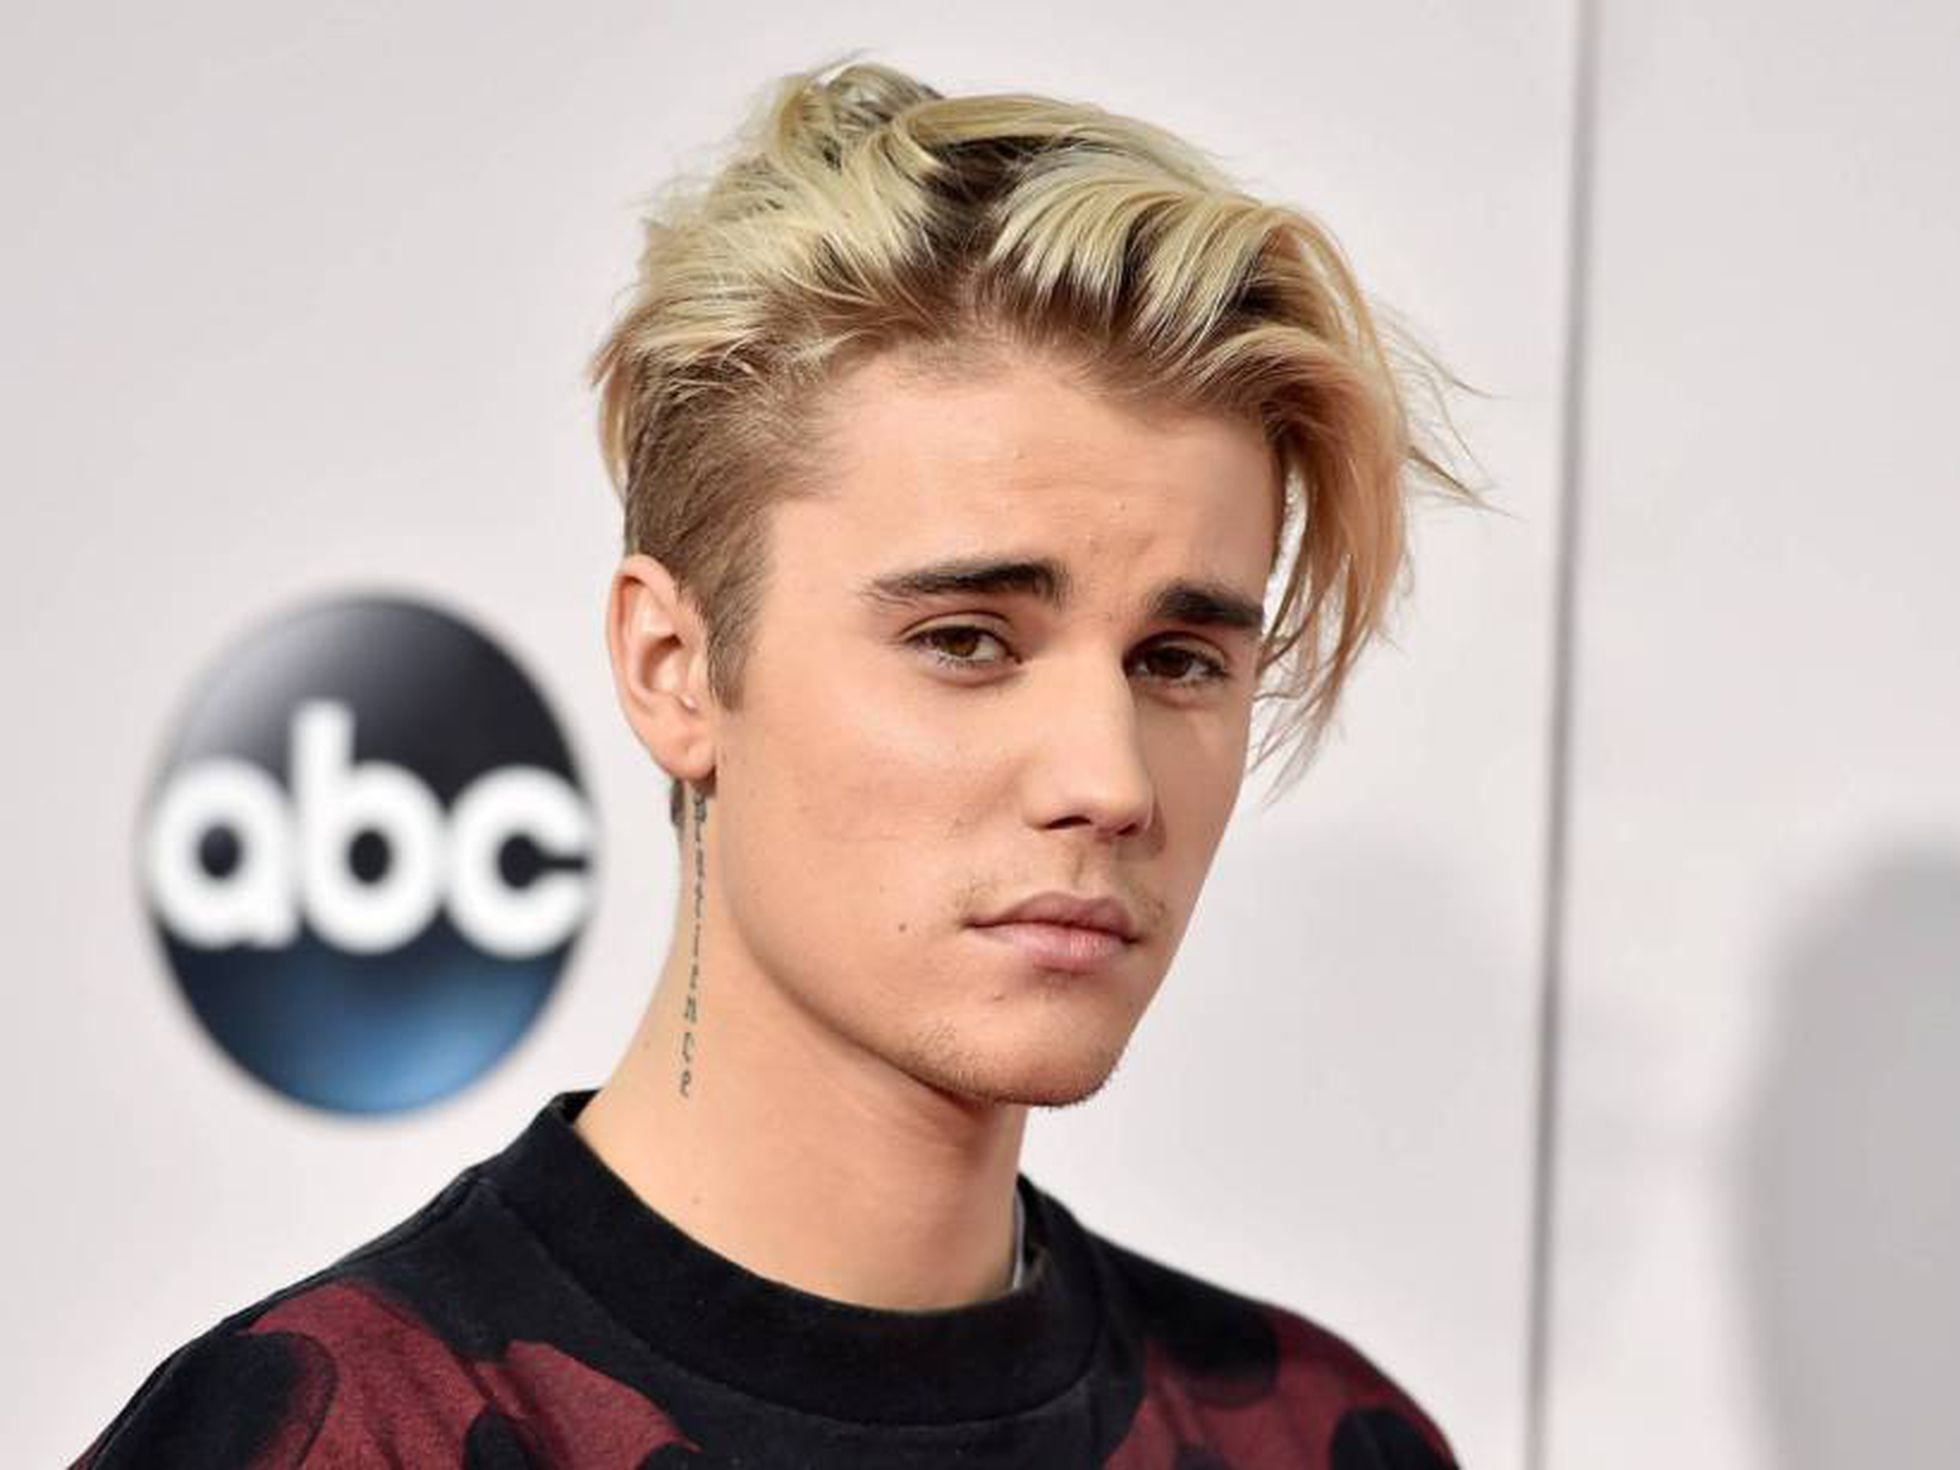 Justin Bieber cierra su cuenta de Instagram | Estilo | EL PAÍS